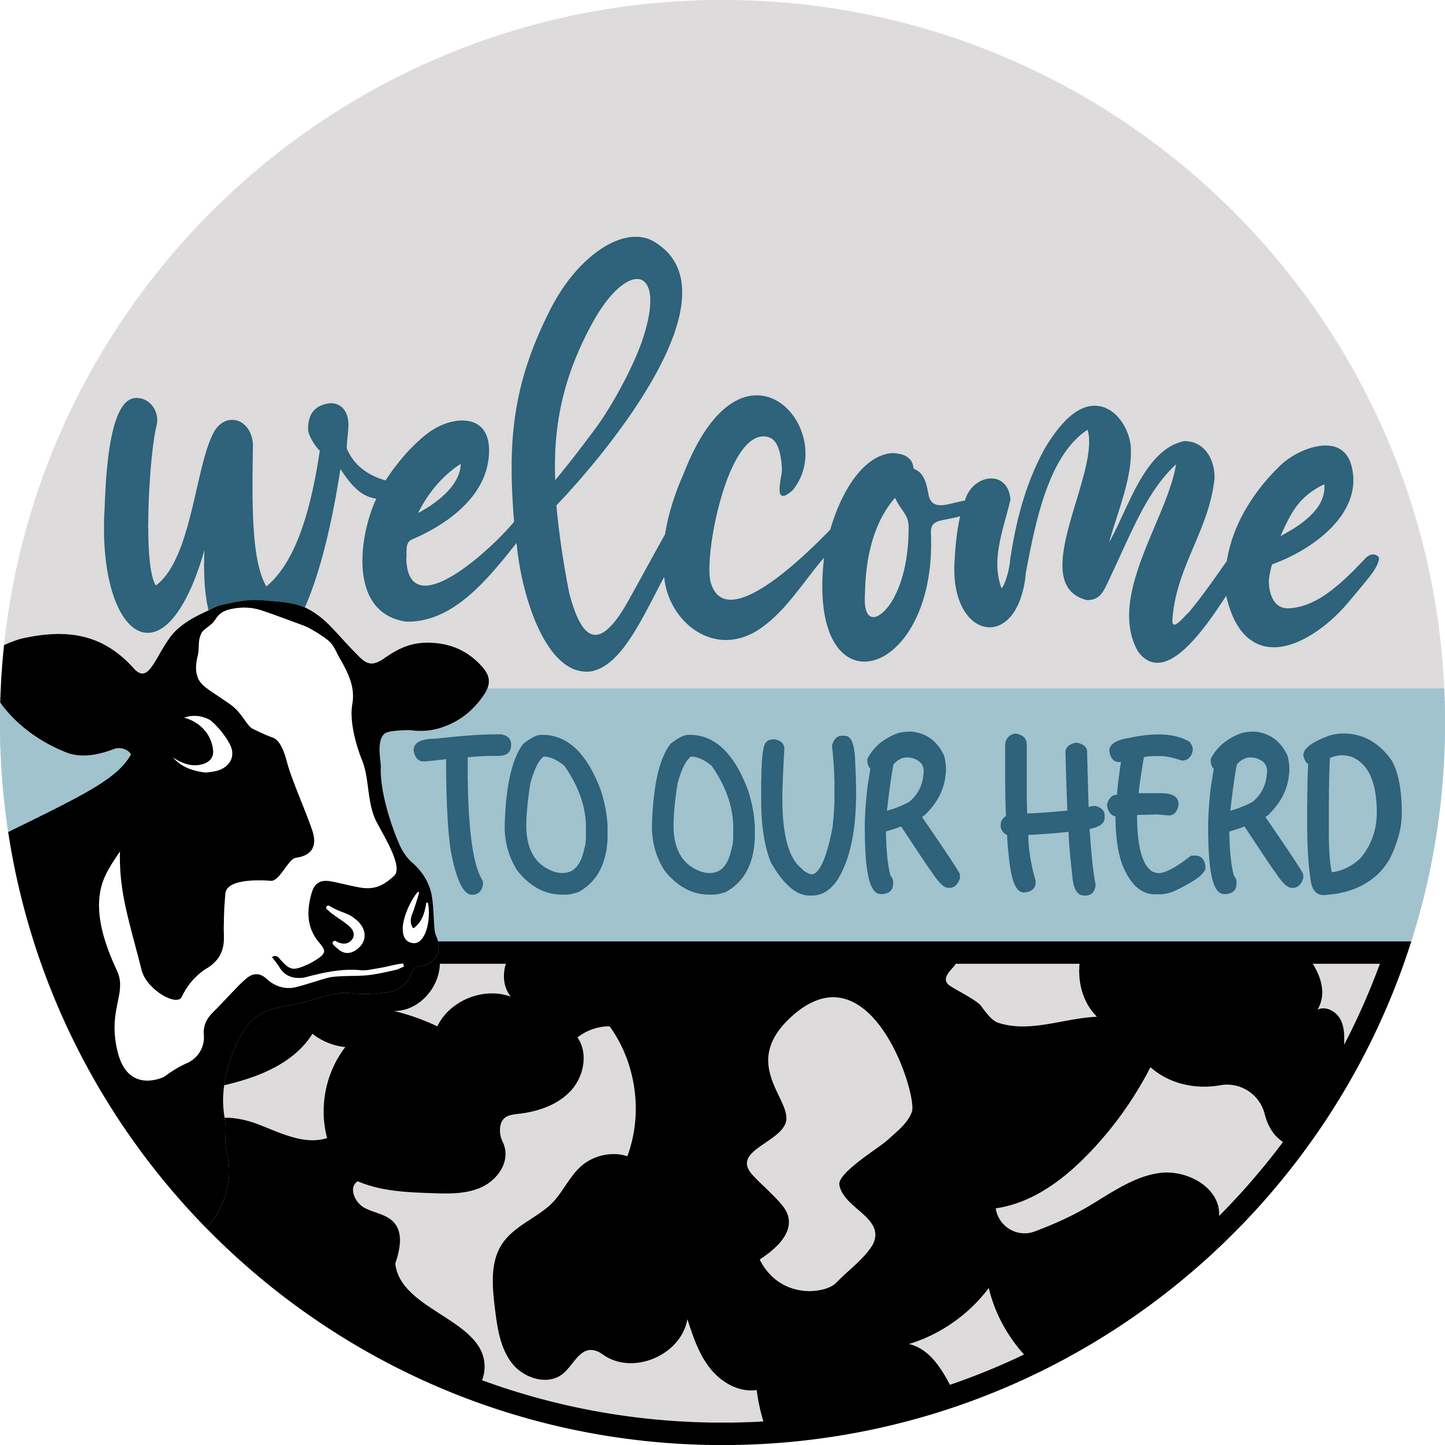 Welcome to our Herd Door Hanger